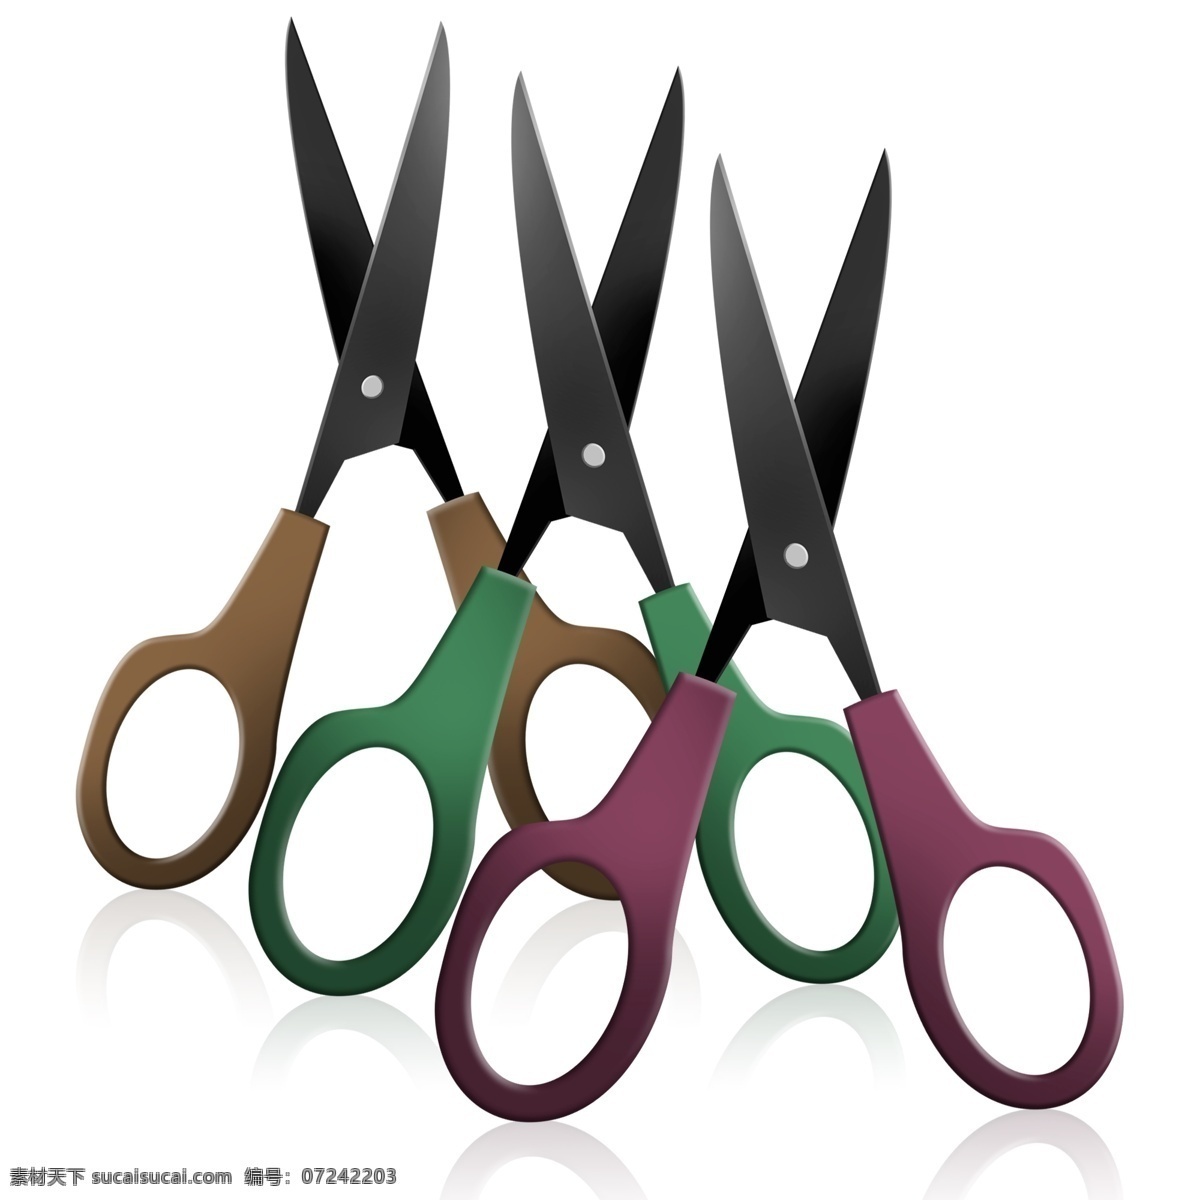 生活用品 剪刀 效果 图案 剪刀图案 日常用品 剪刀素材